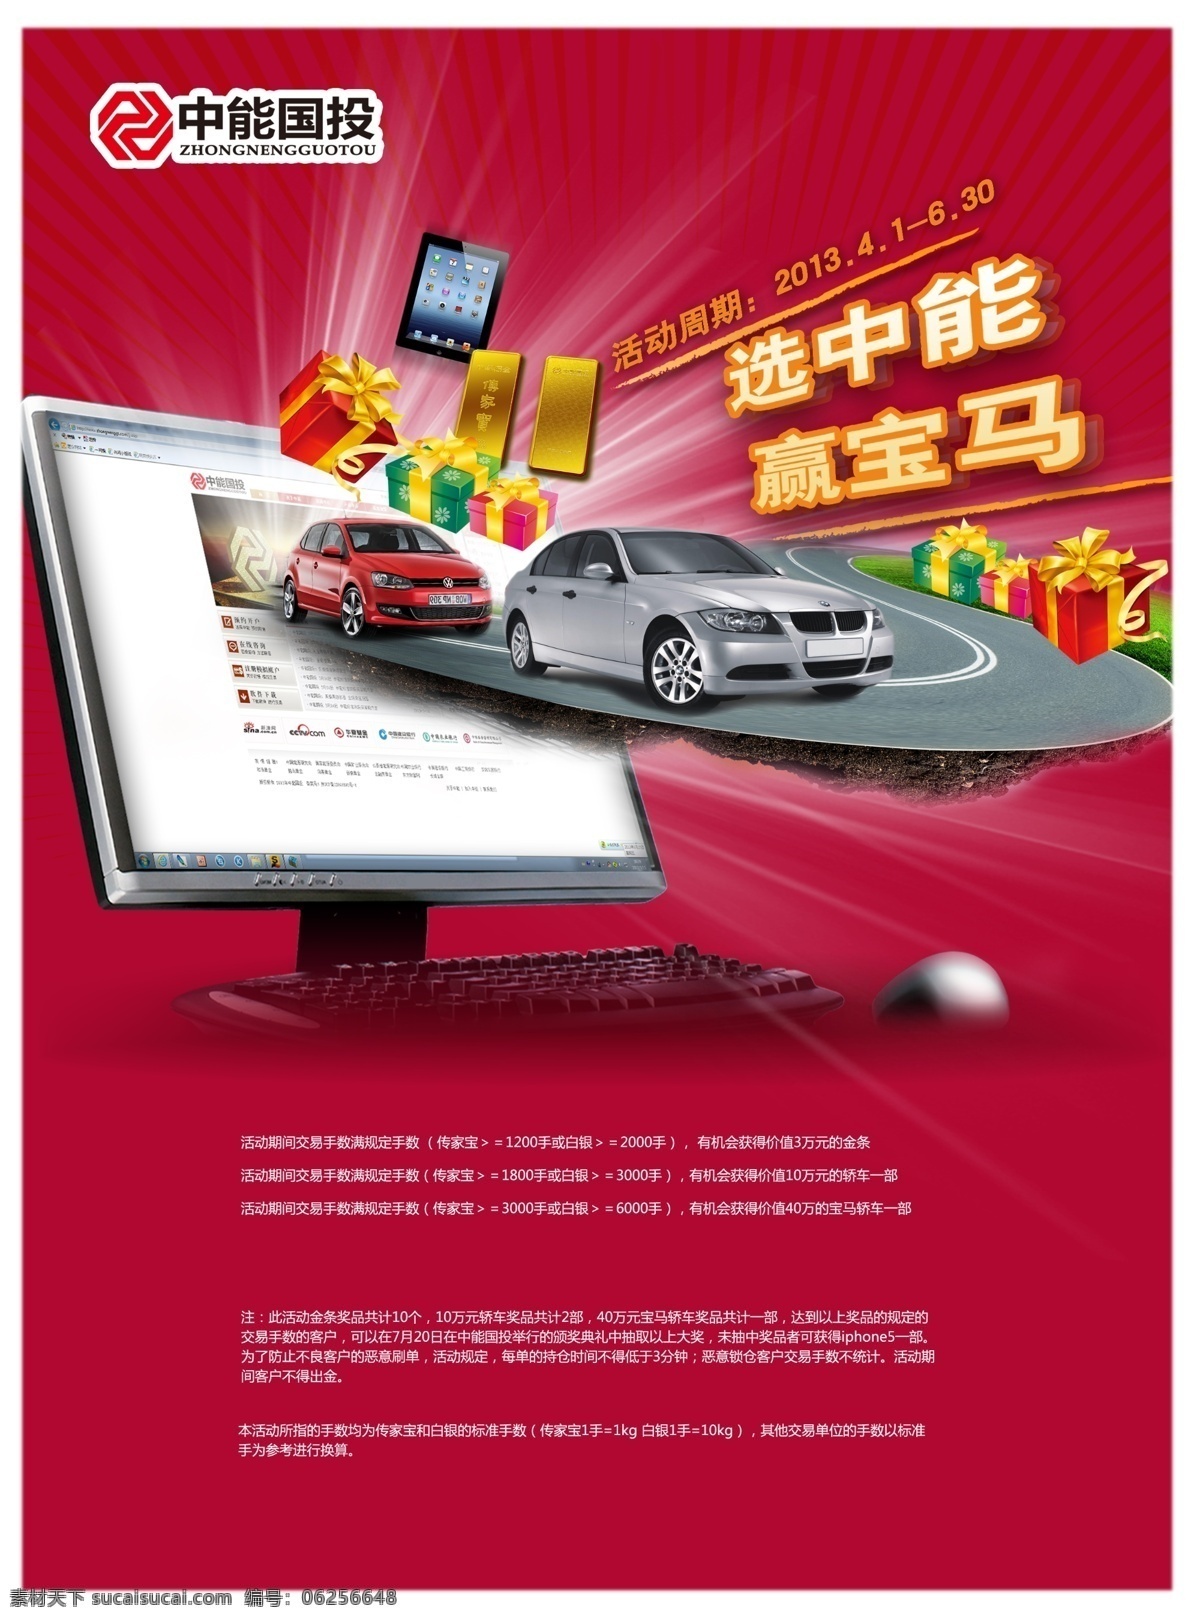 中能 国投 广告 海报 中能国投 活动广告 礼包 创意电脑 金光 金条 红色背景 特效广告设计 广告海报 psd素材